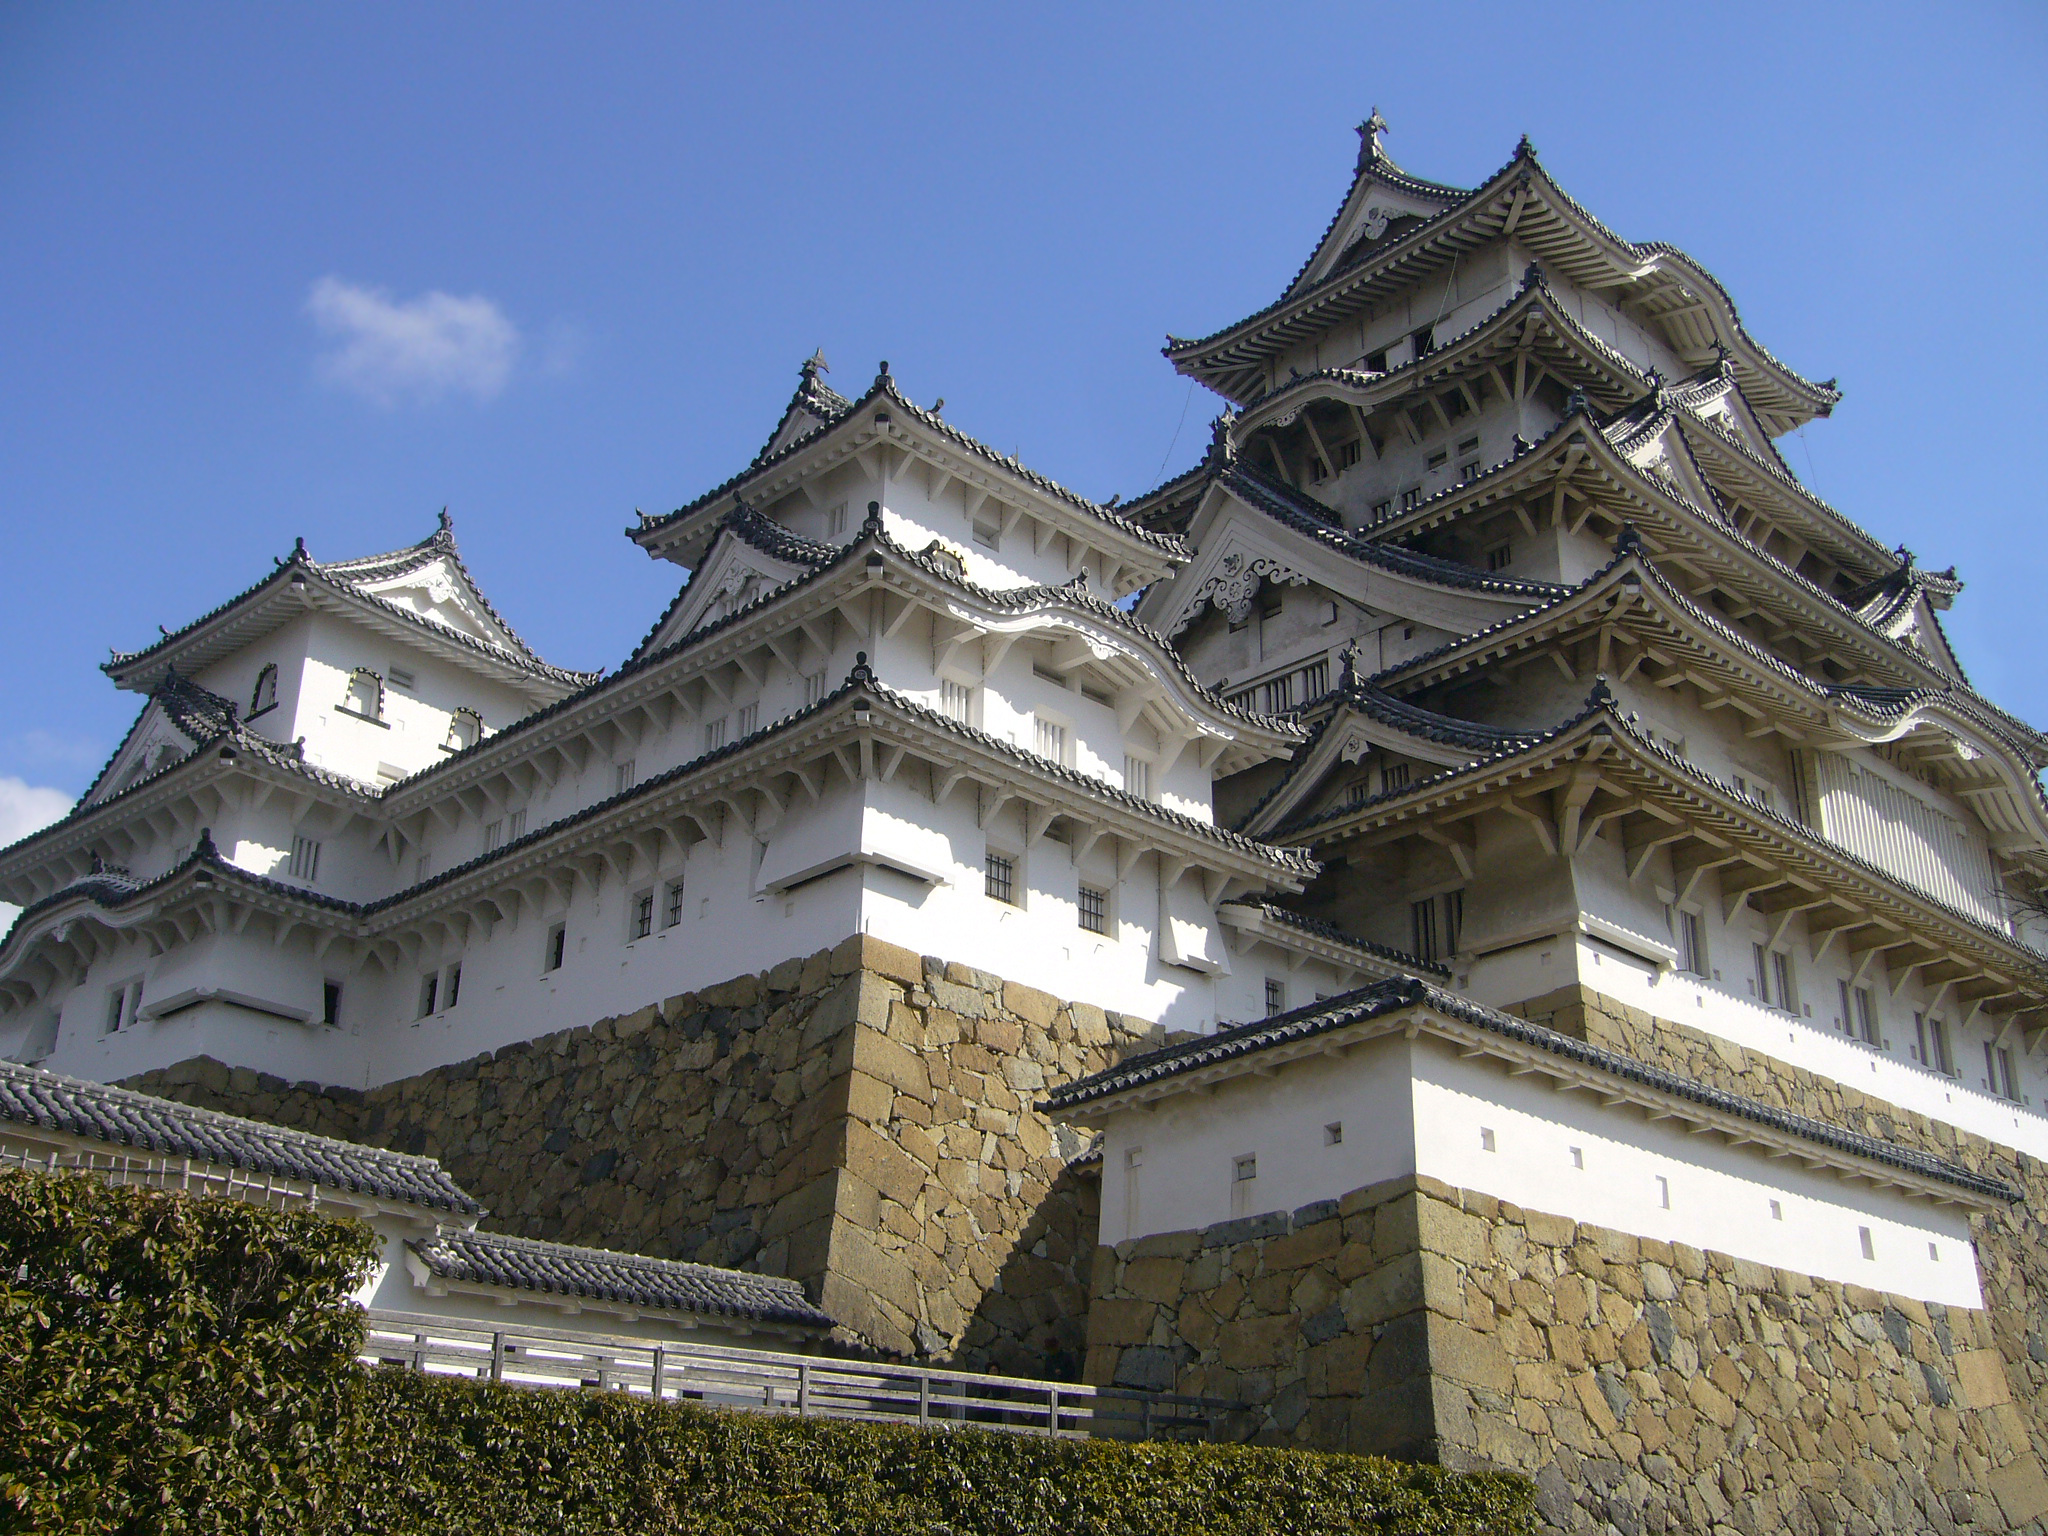 Castelo de himeji - história e curiosidades